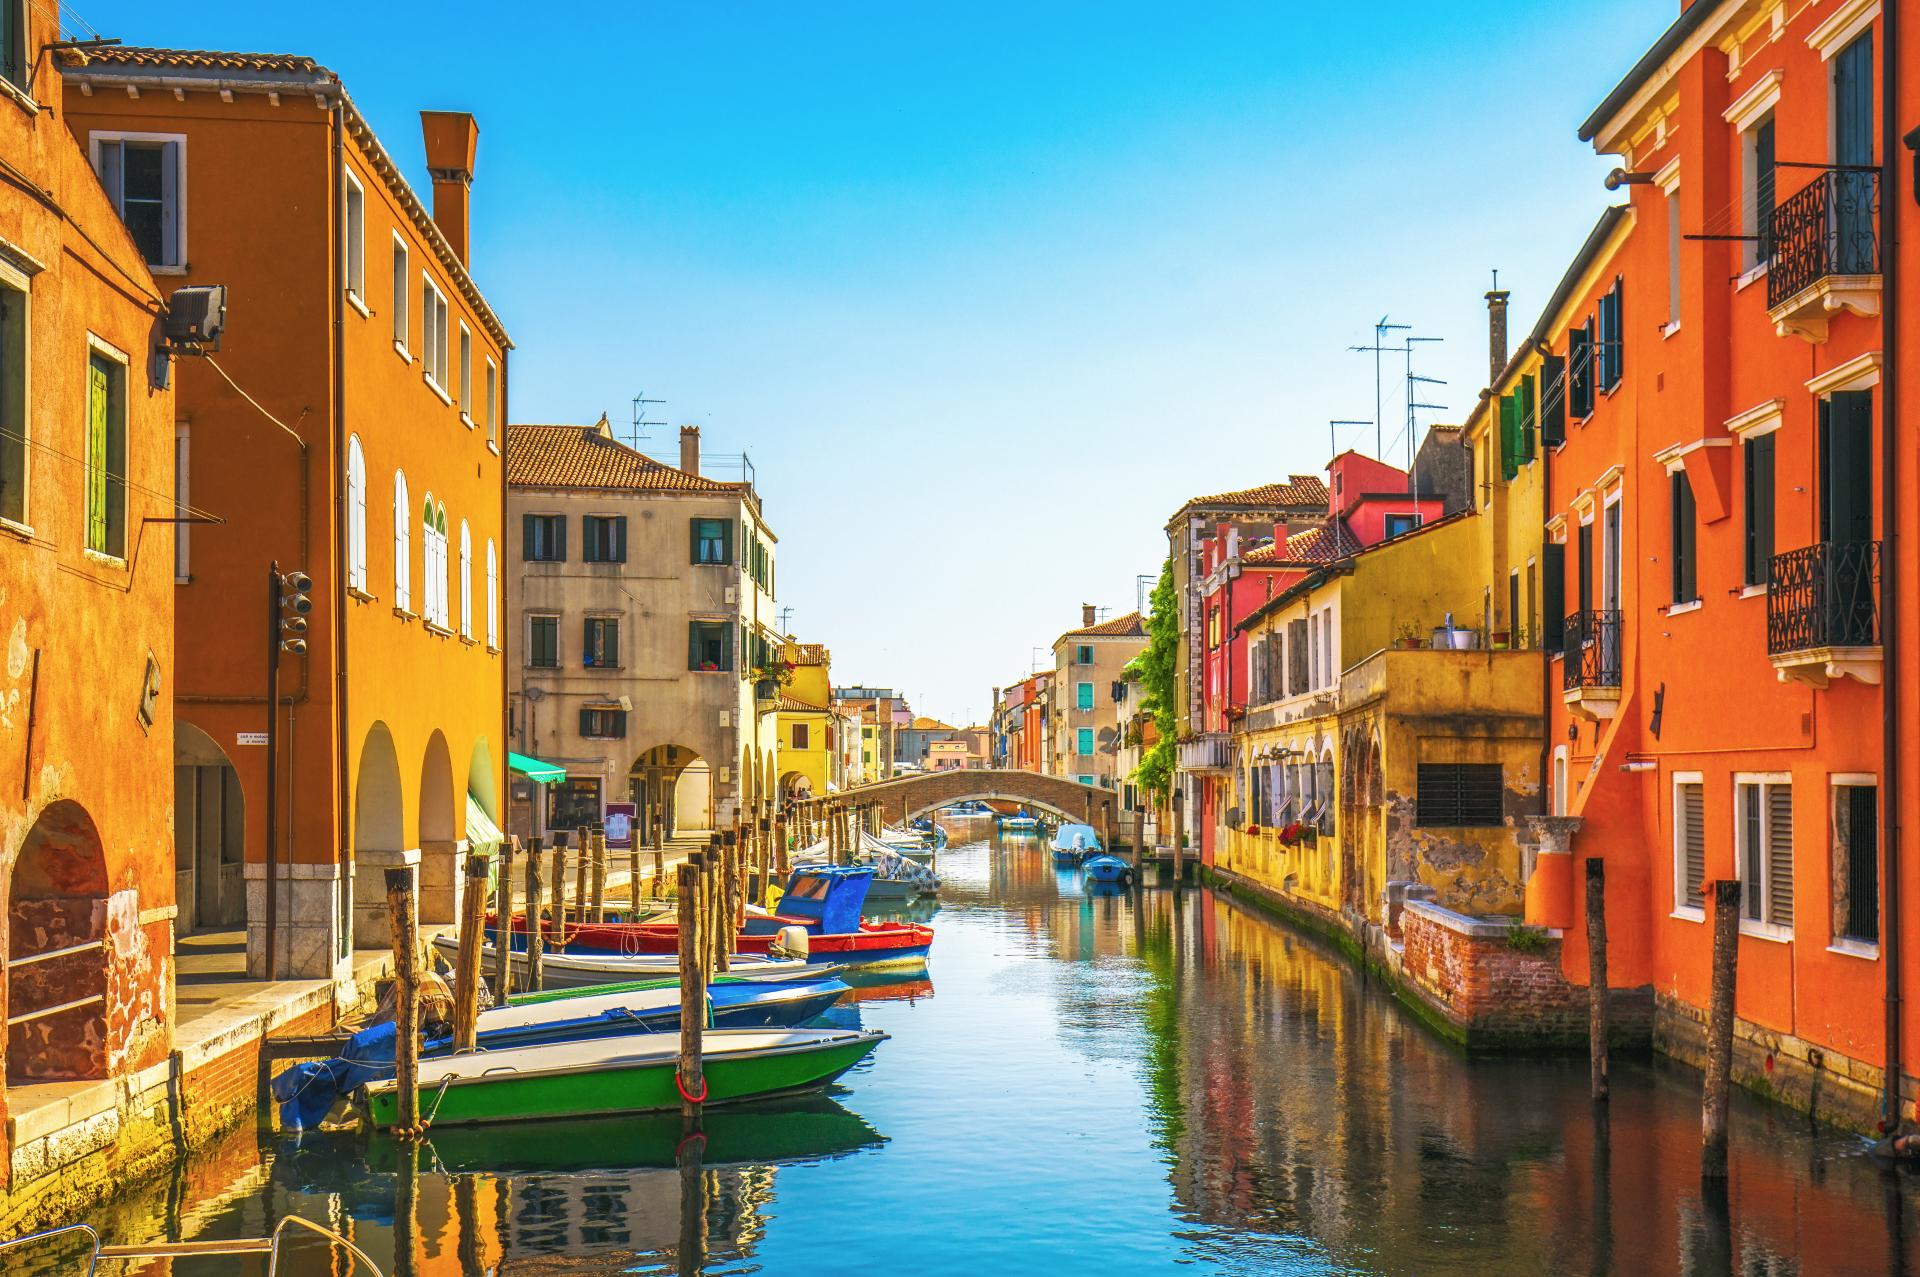 Chioggia czyli "mała Wenecja". Co warto zobaczyć? Czy to dobre miejsce na dłuższy urlop?